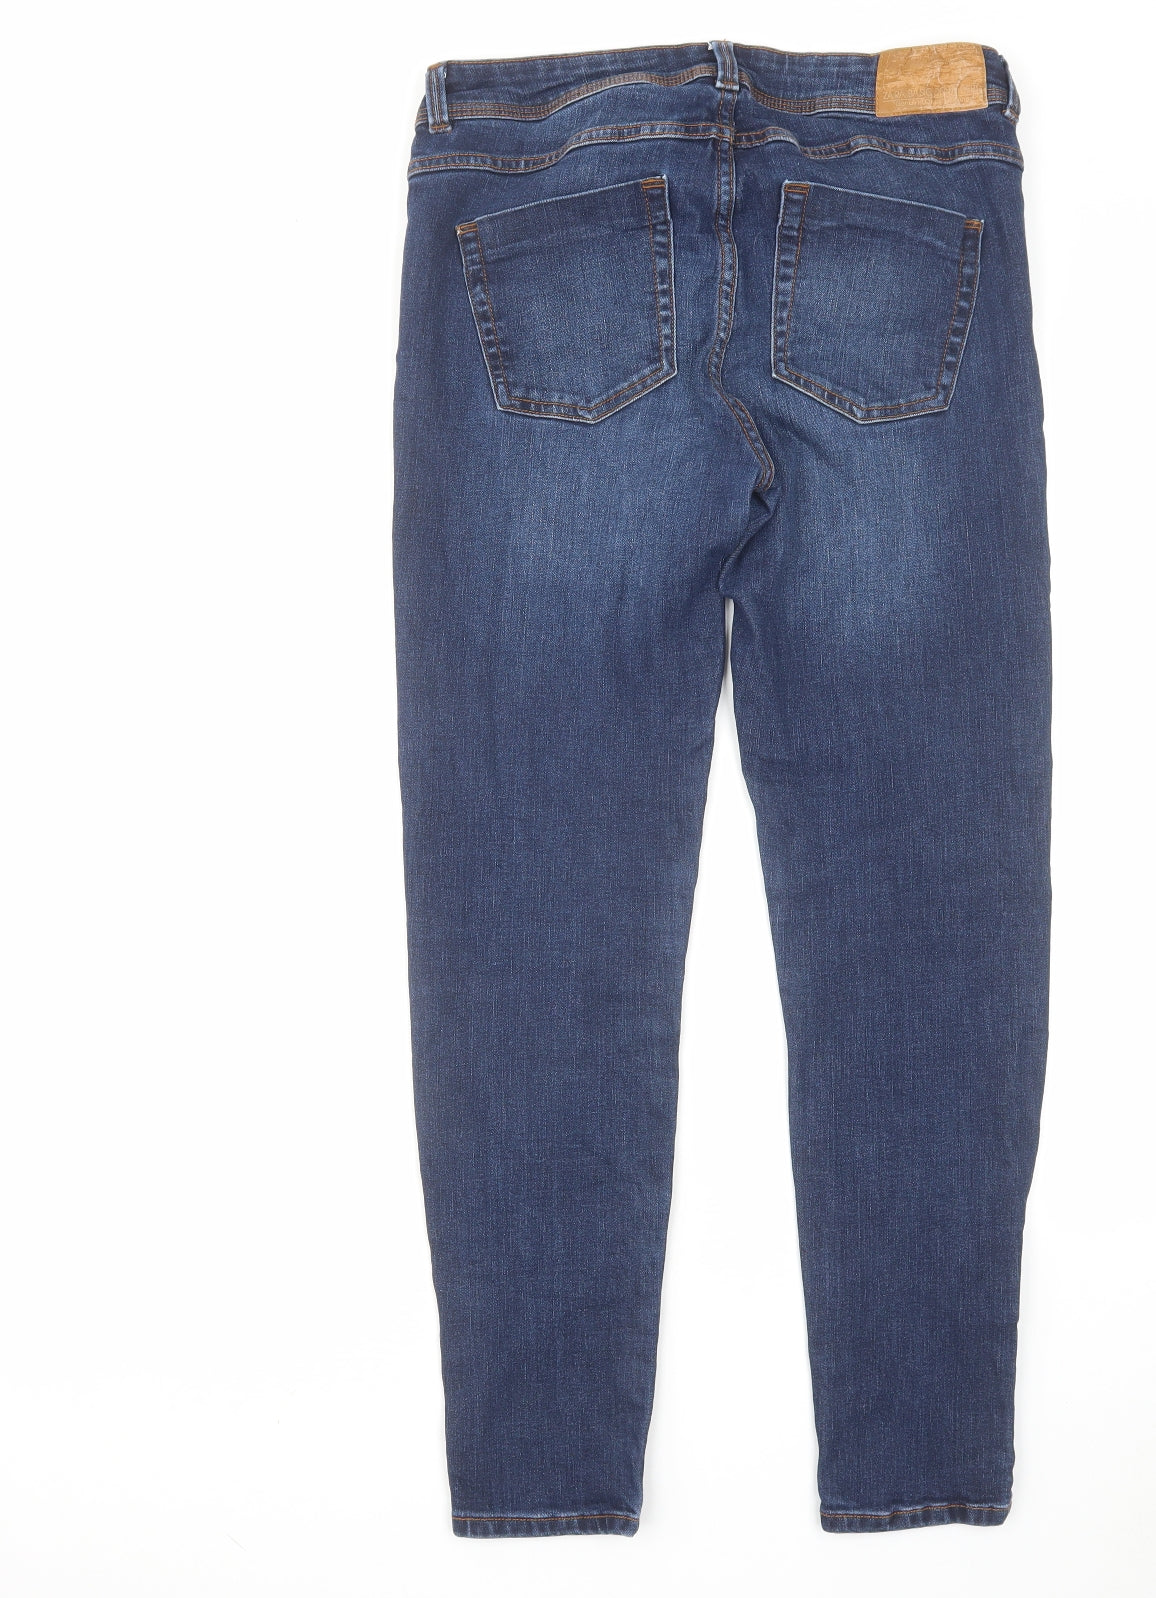 Zara Womens Blue Cotton Skinny Jeans Size 28 in L27 in Regular Zip